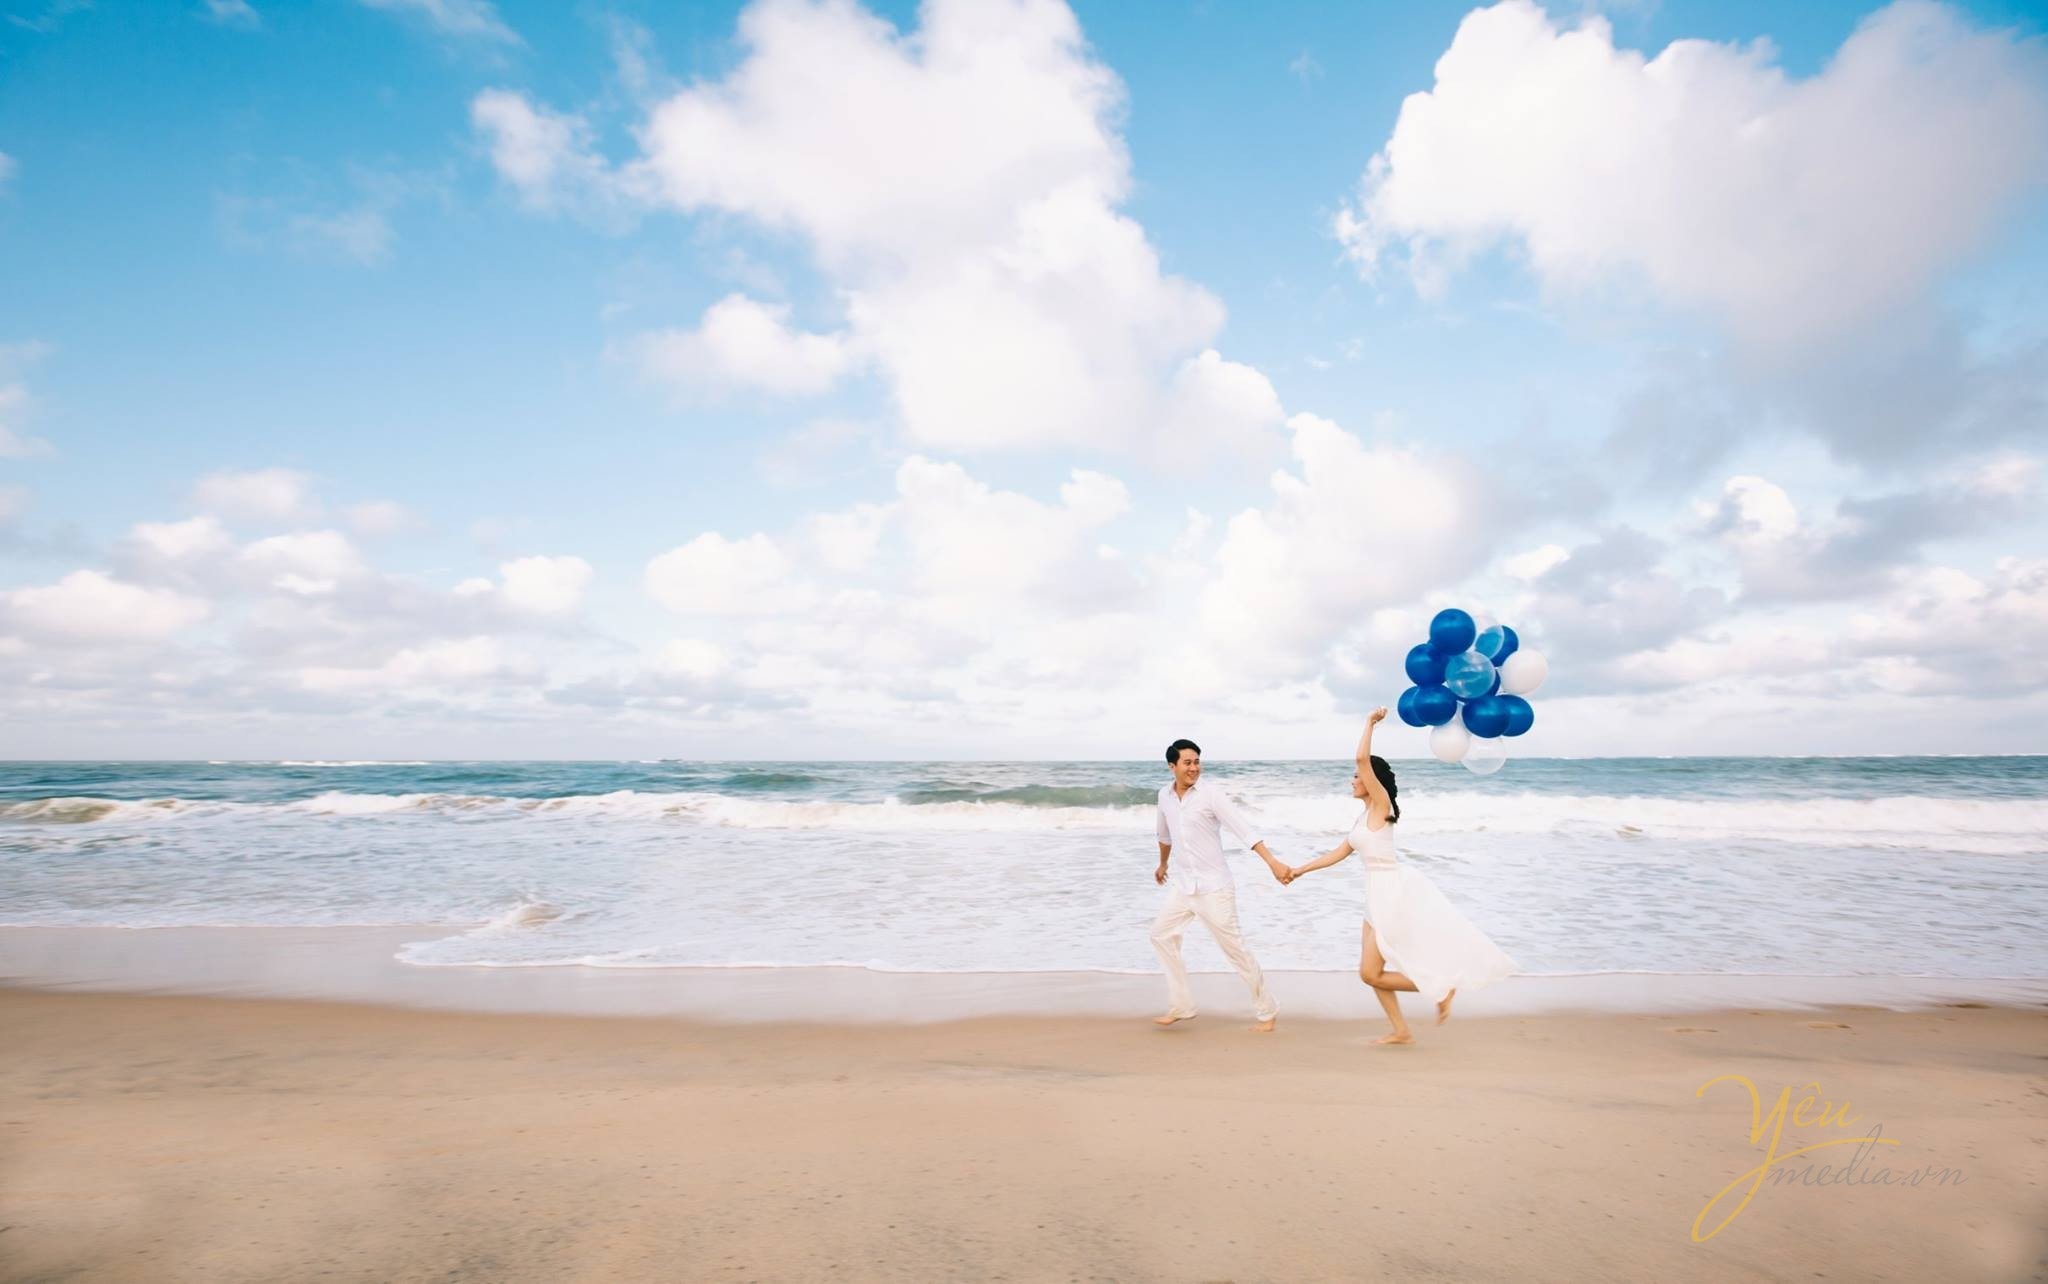 chụp ảnh cưới tại biển cùng bóng bay co dâu chú rể dắt tay nhau chạy trên bờ biển